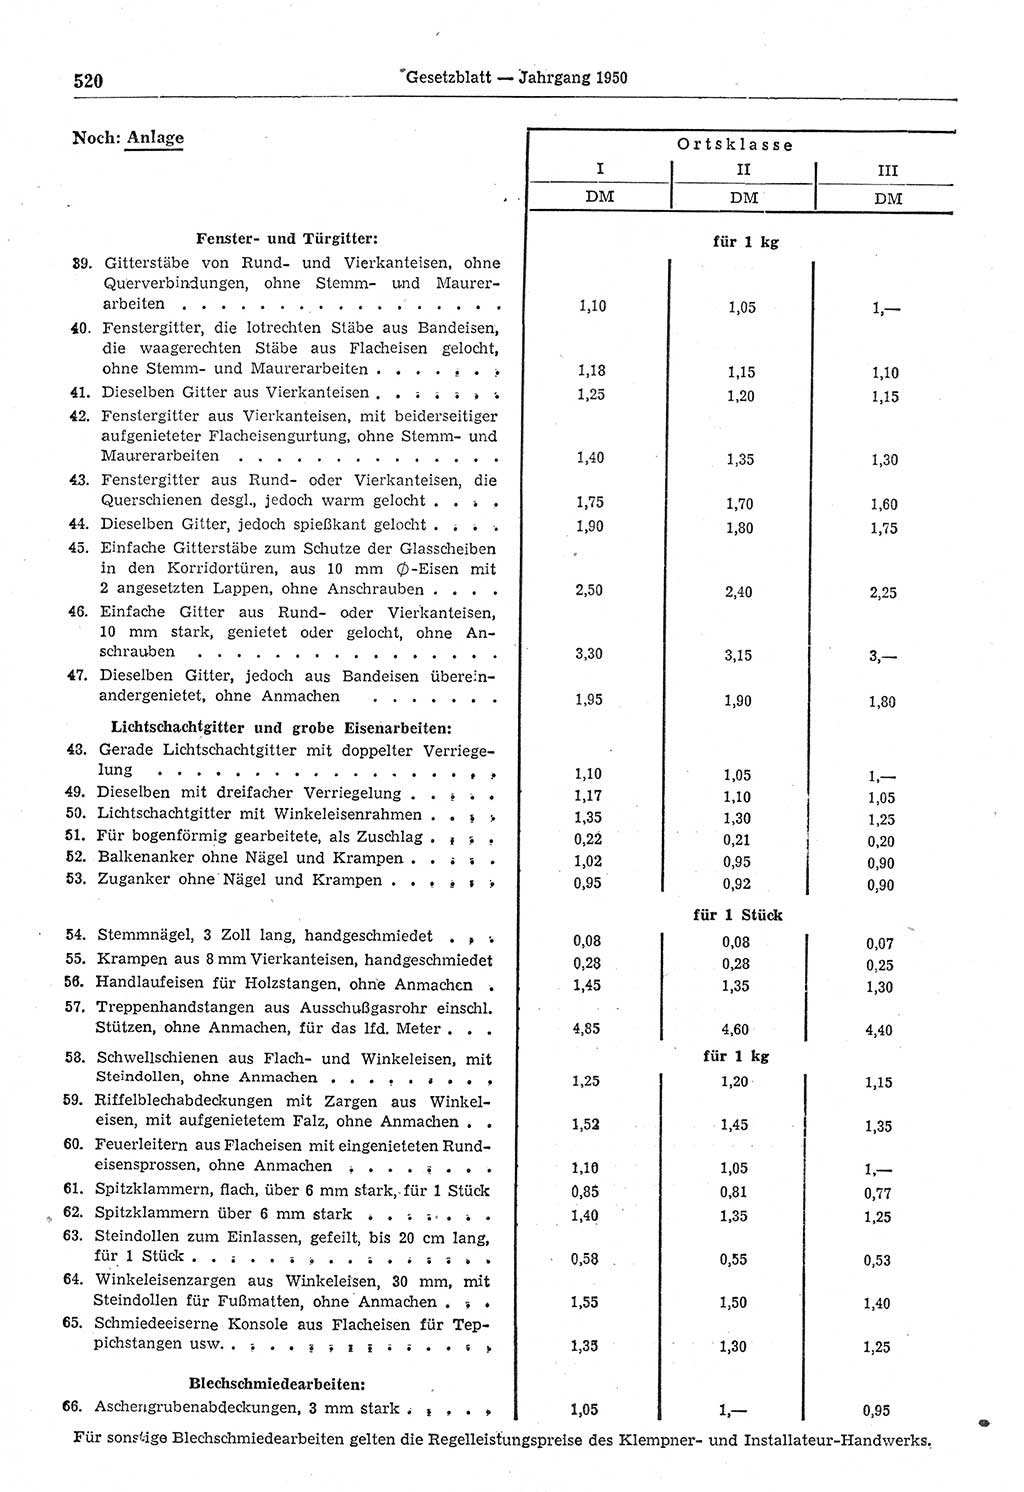 Gesetzblatt (GBl.) der Deutschen Demokratischen Republik (DDR) 1950, Seite 520 (GBl. DDR 1950, S. 520)